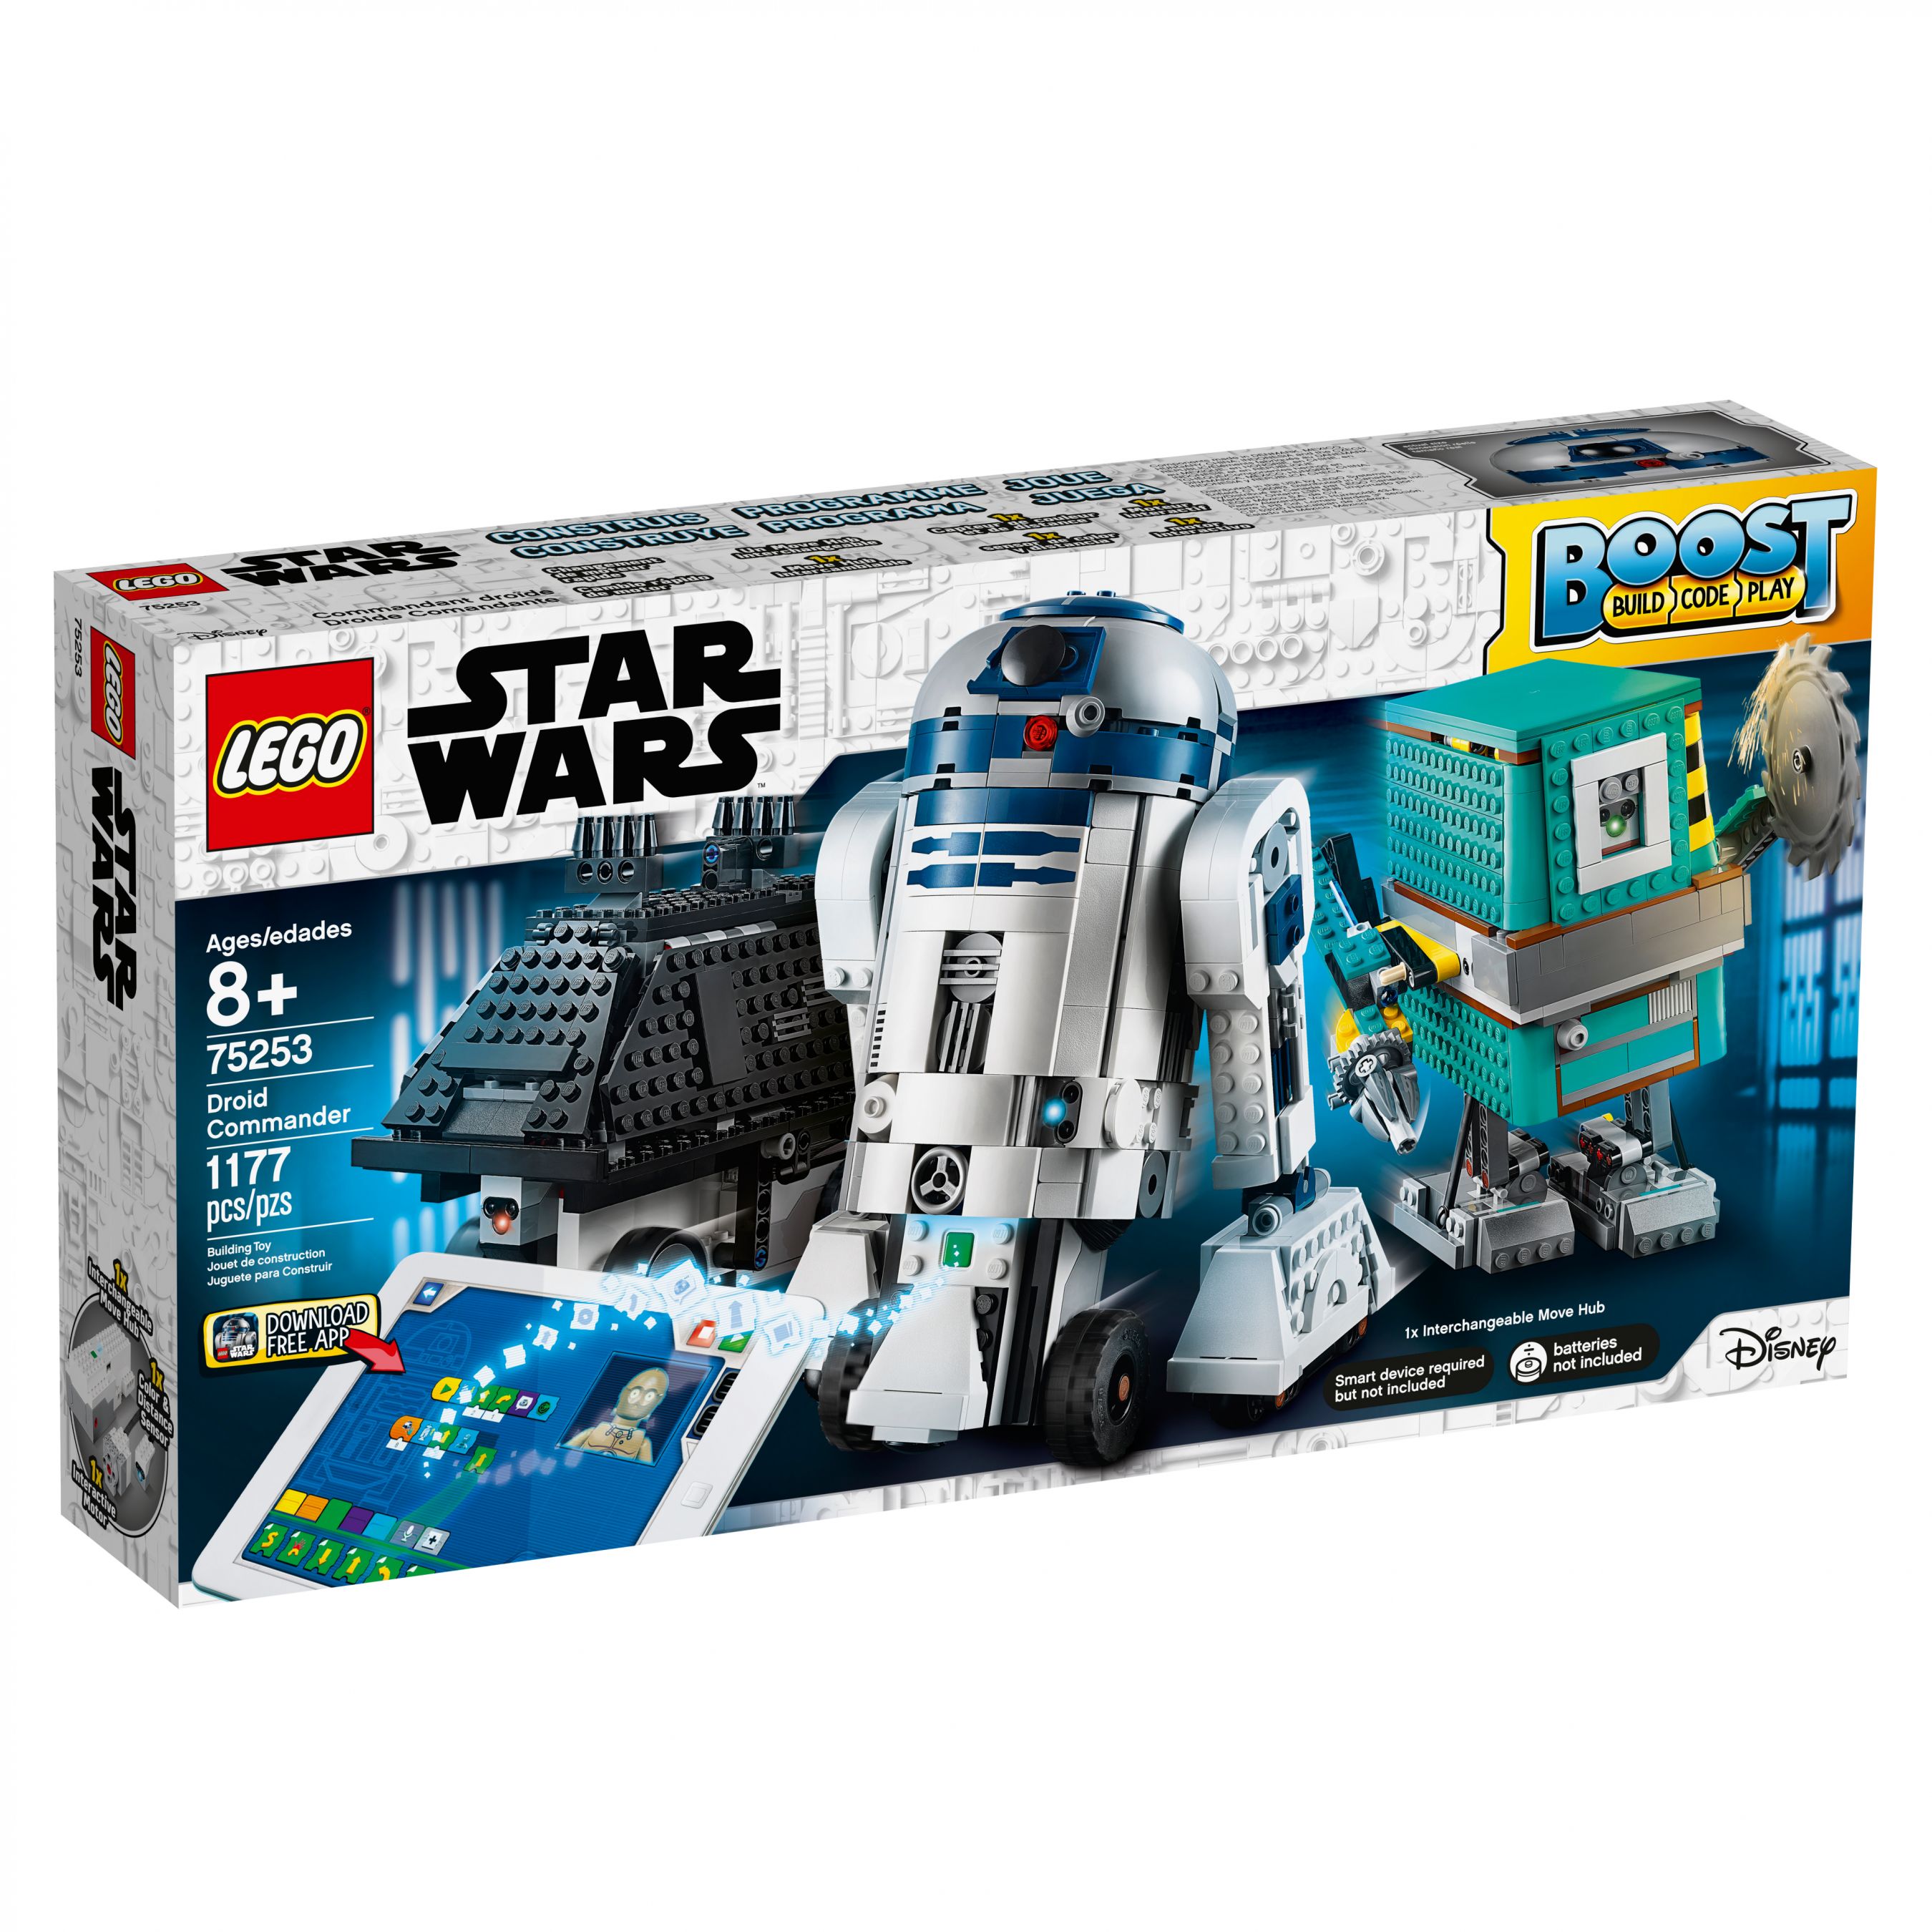 LEGO BOOST 75253 Star Wars™ BOOST Droide LEGO_75253_alt1.jpg